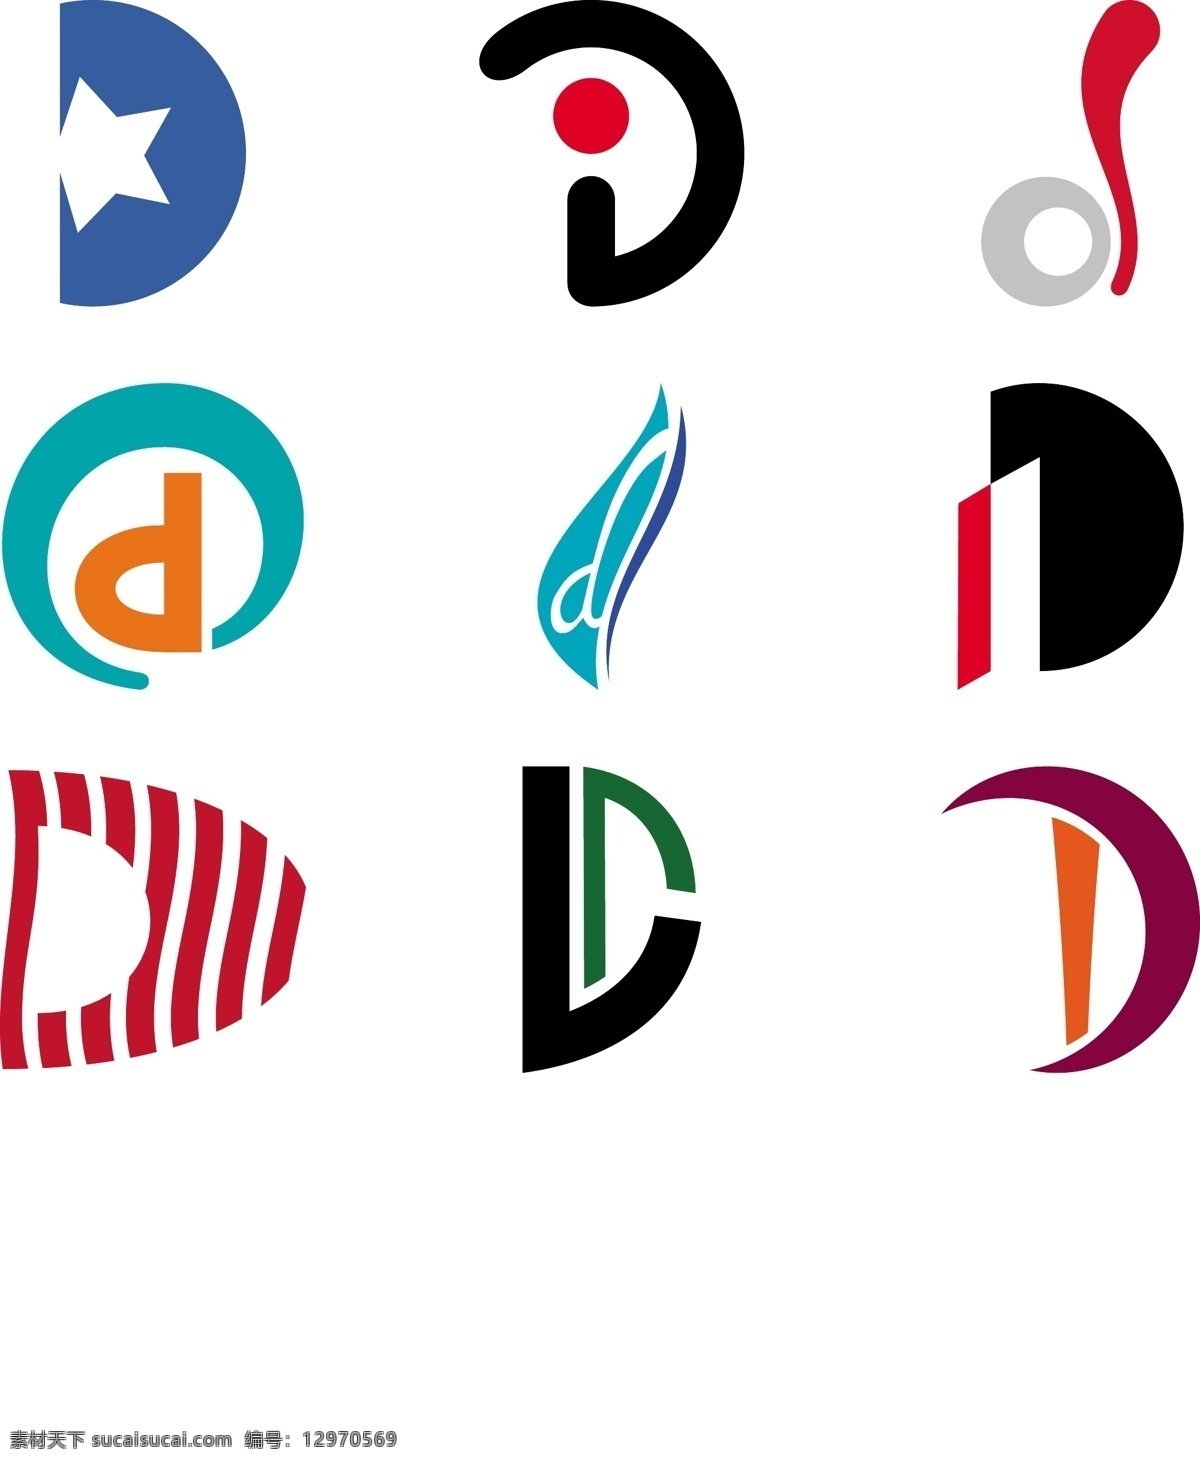 字母 d 标志 概念 标志设计 插画 插图 创意 徽标 免费 病 媒 生物 载体 人工智能 ps 图象处理 软件 现代的 独特的 原始的 高质量 设计新的 最终的 字母表 信 字母d 错字 字体 psd源文件